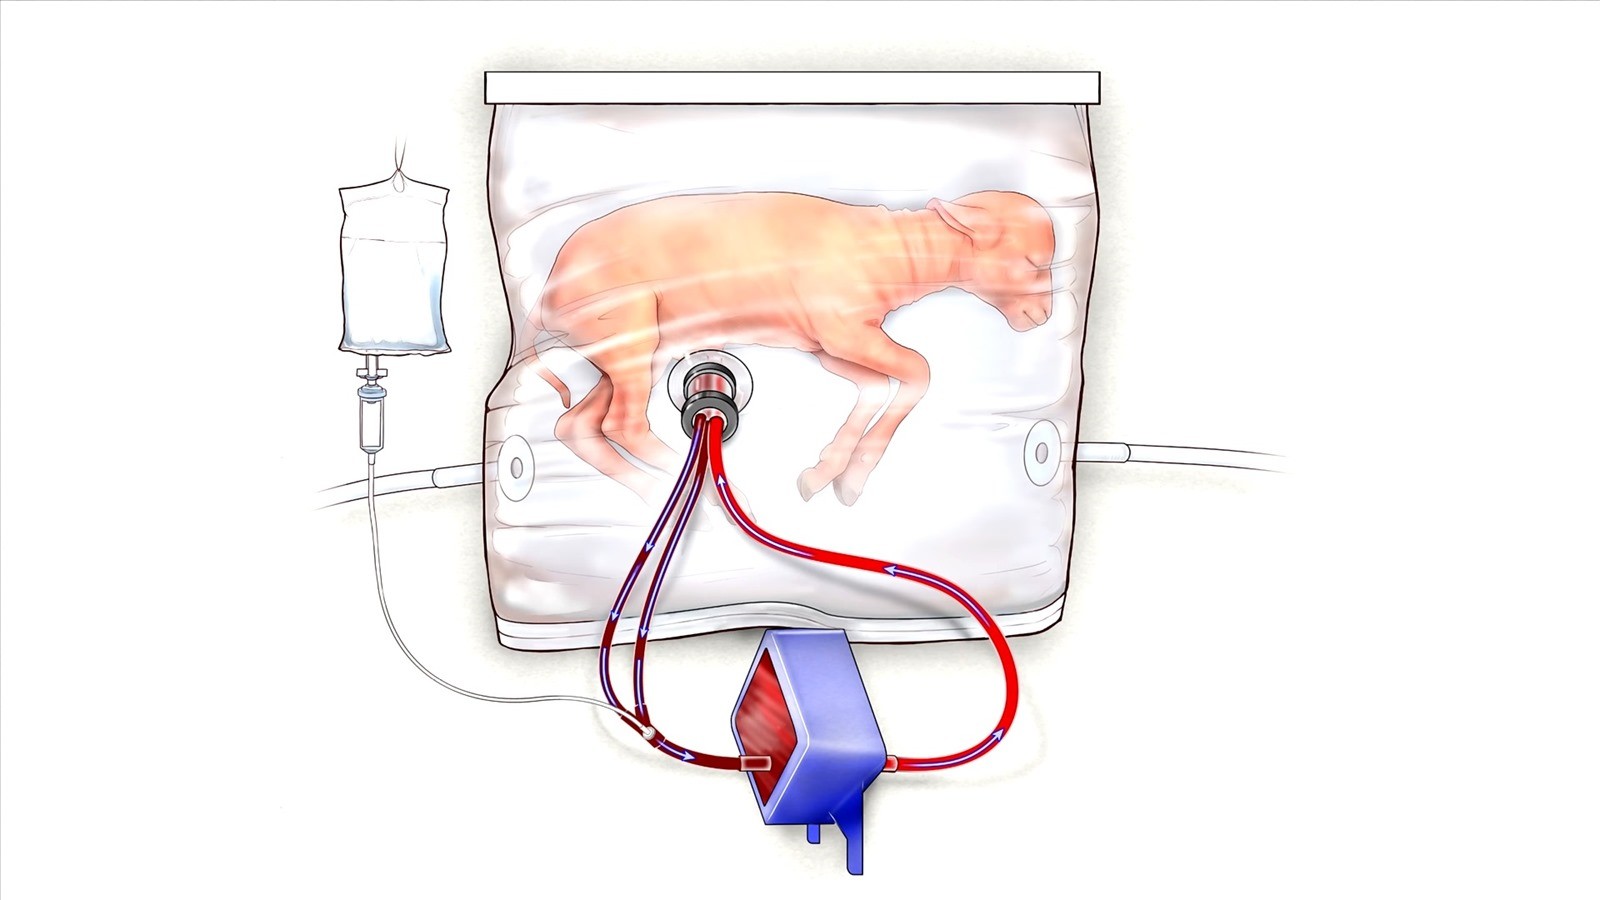 Des agneaux très prématurés ont terminé leur développement dans un placenta artificiel